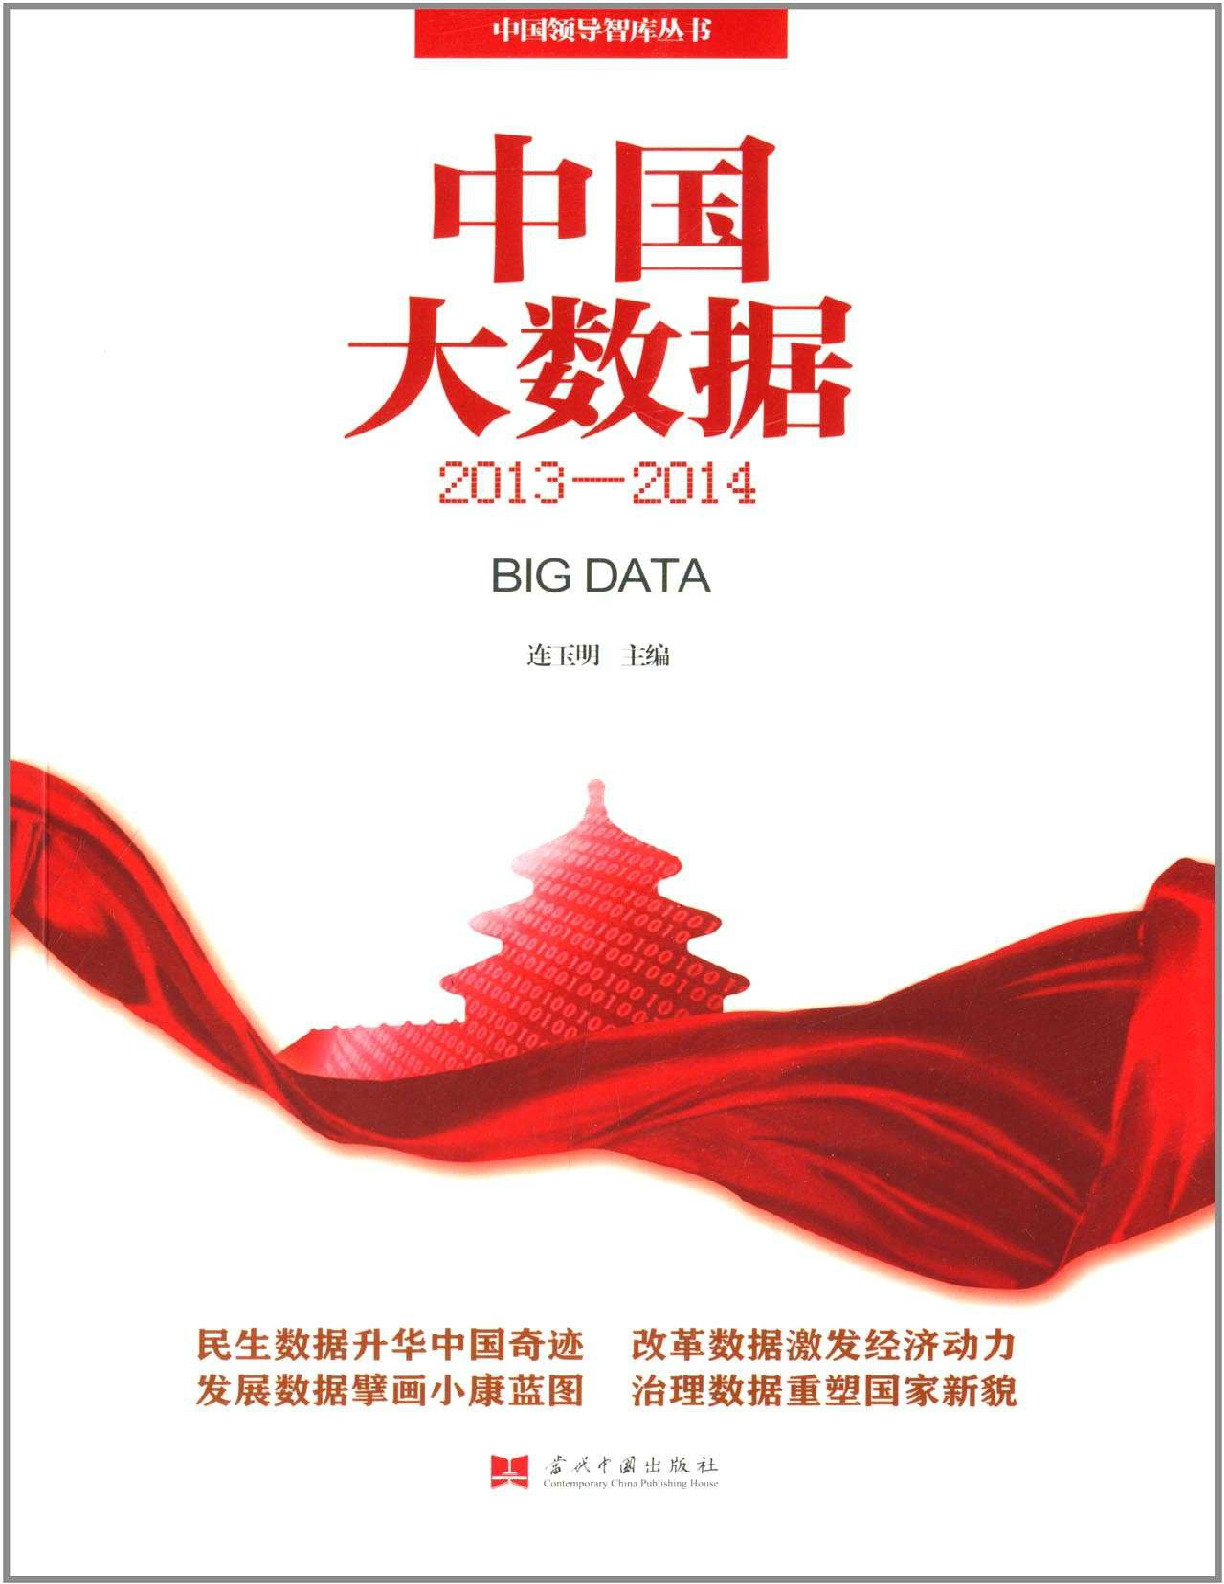 中国大数据 – 连玉明